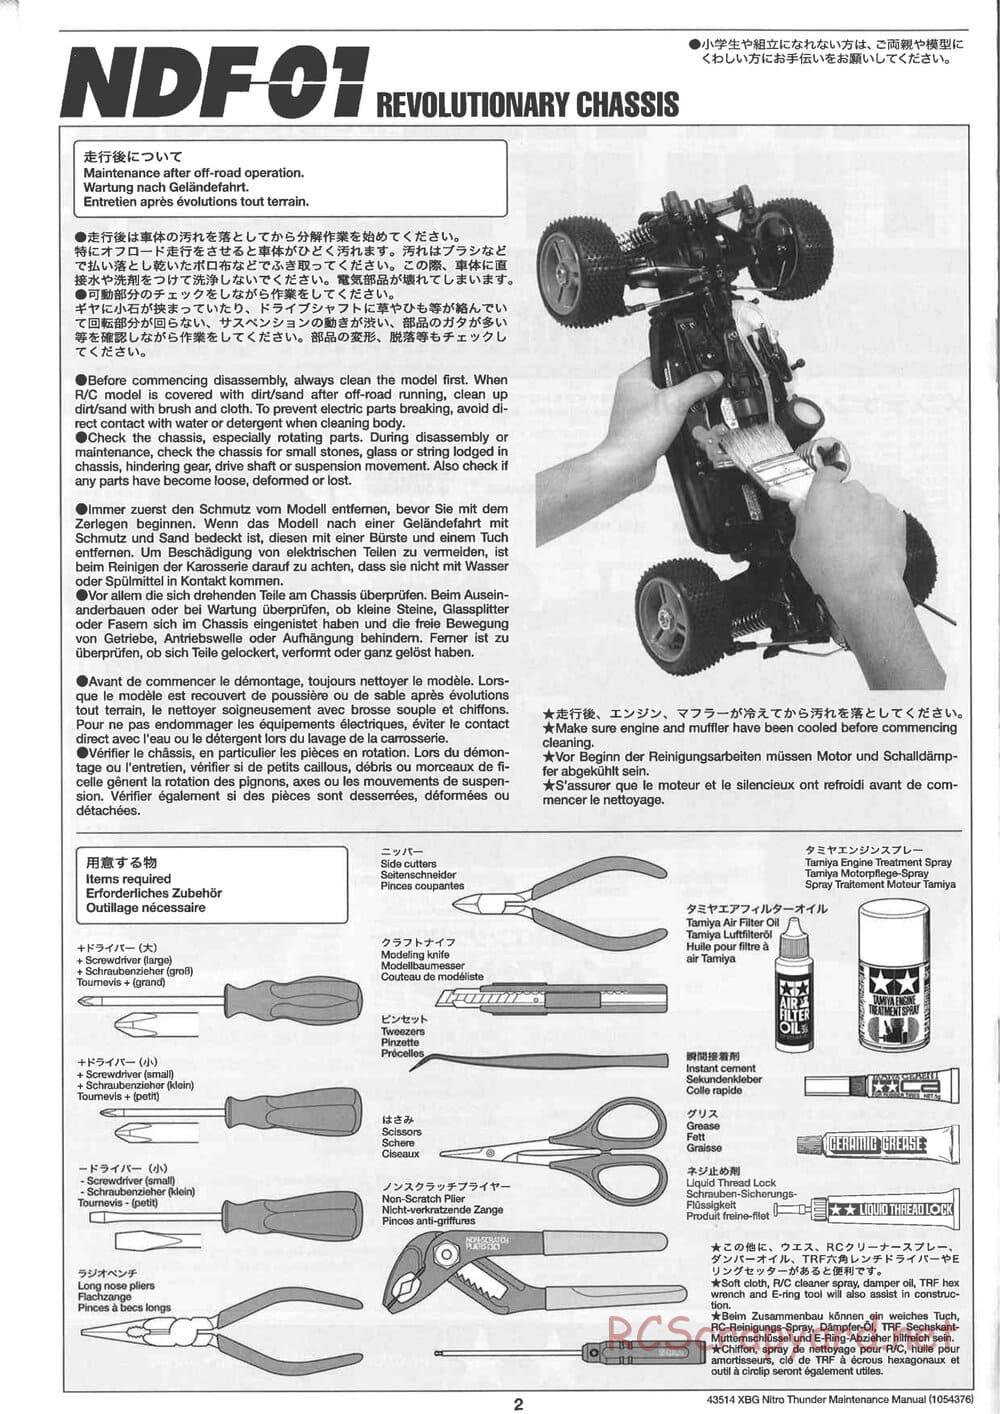 Tamiya - Nitro Thunder - NDF-01 Chassis - Manual - Page 2